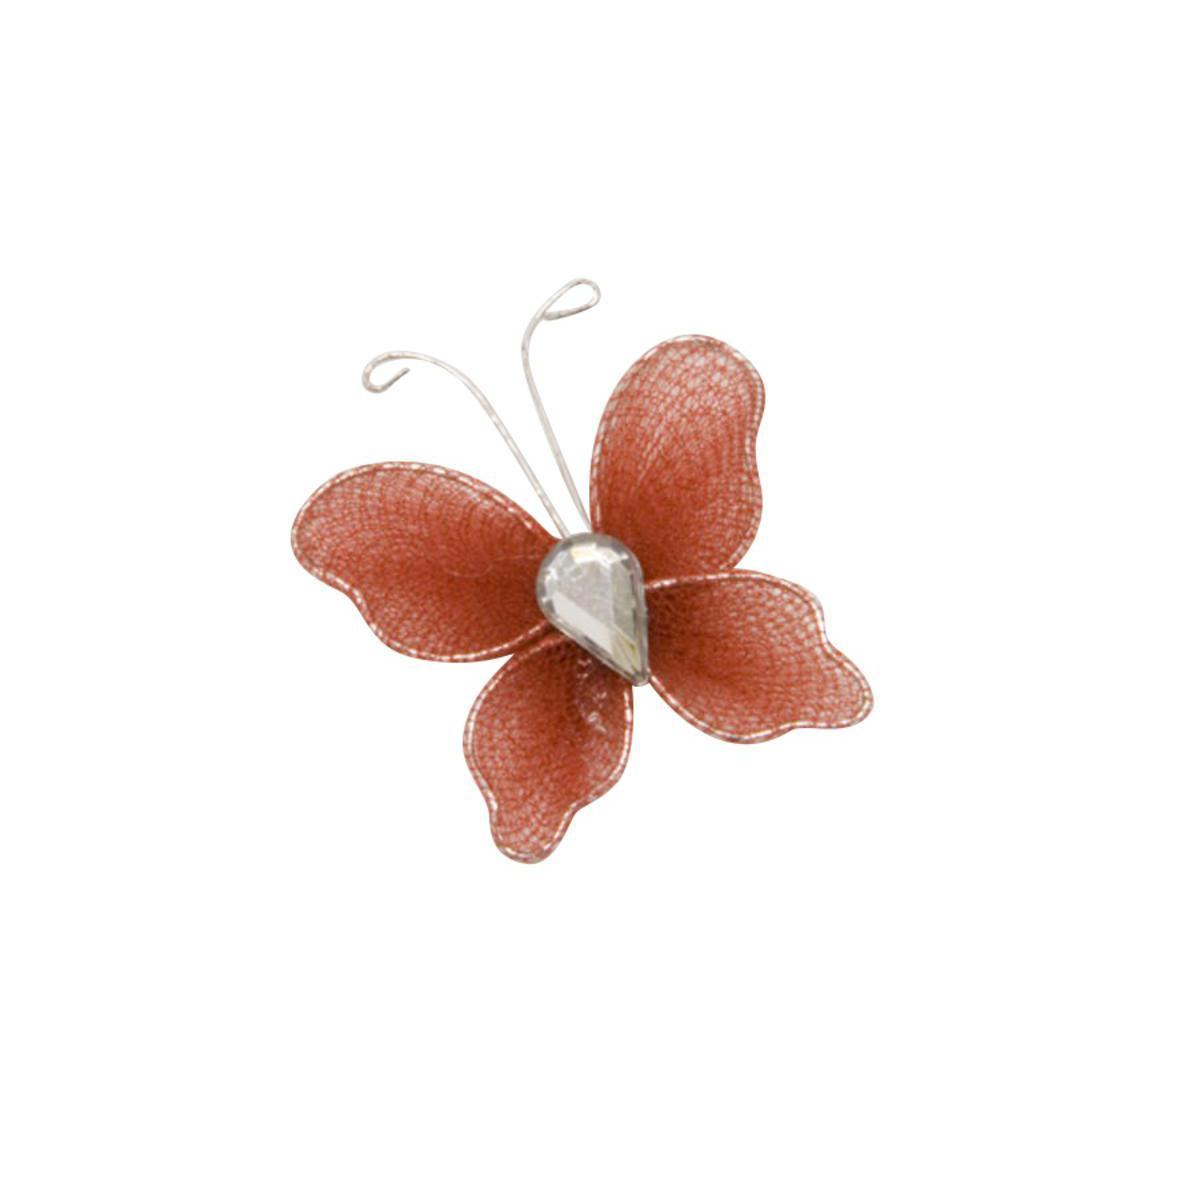 10 petits papillons décoratifs - 3,5 cm - Plastique - Bordeaux